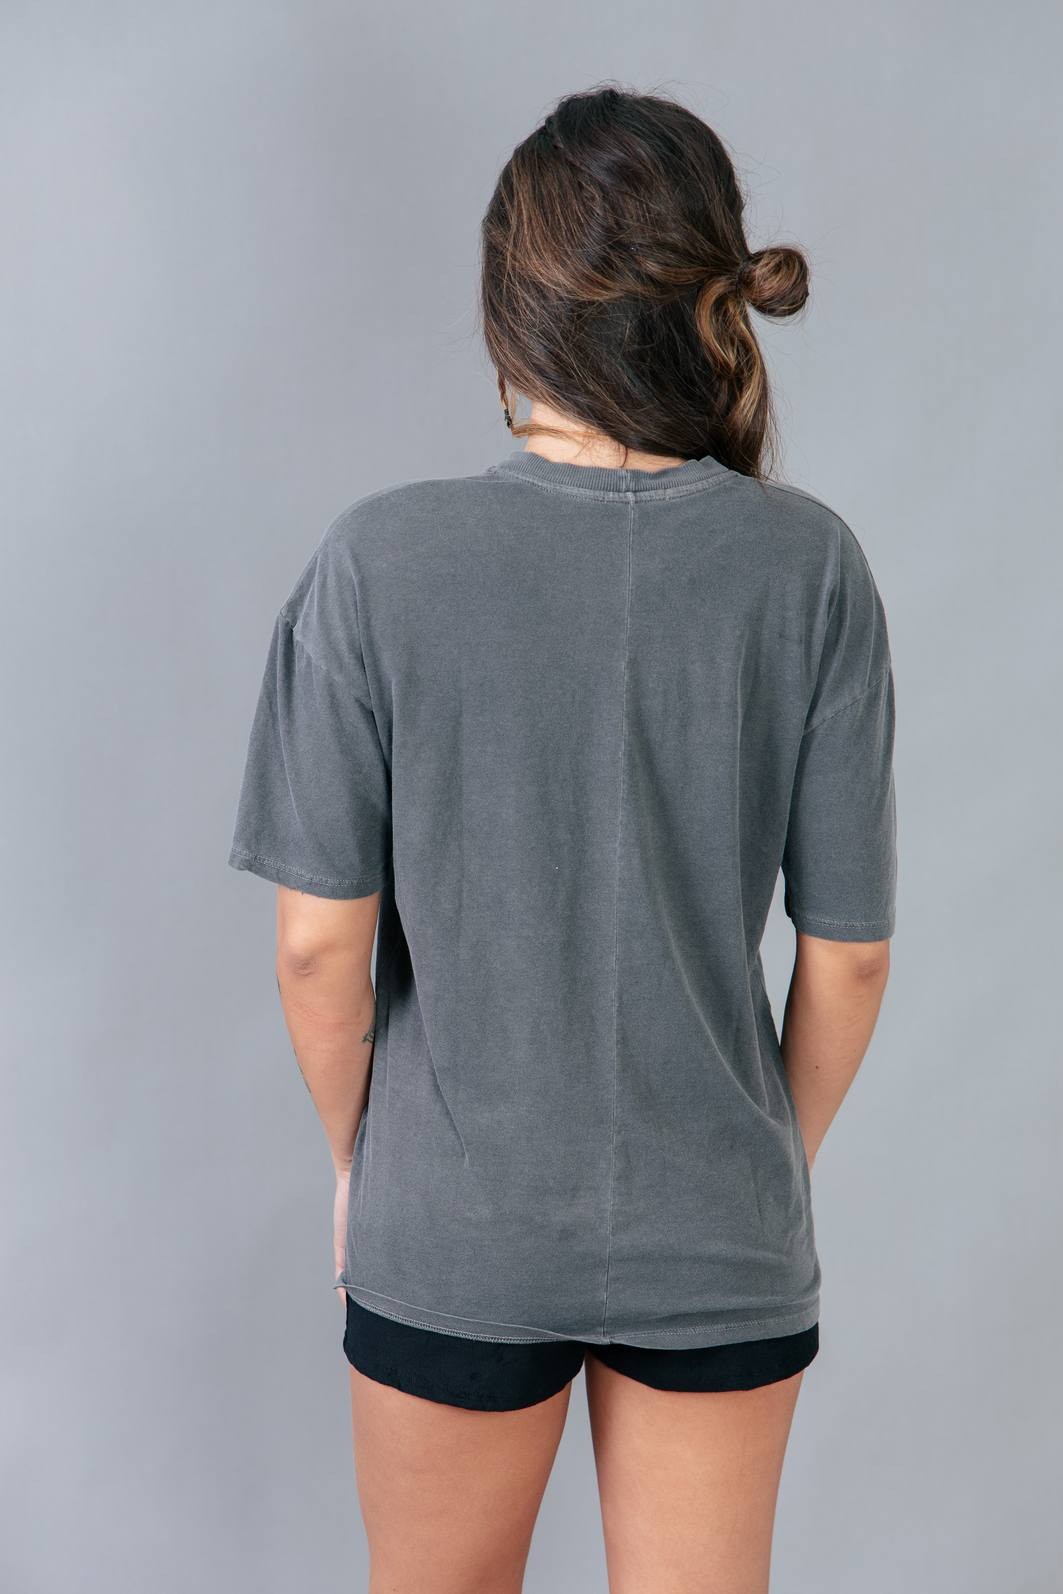 T-Shirt New York Preta: As t-shirts em 100% algodão mais estilosas estão  aqui! - T-Shirt New York Preta - AMÔ BRAND